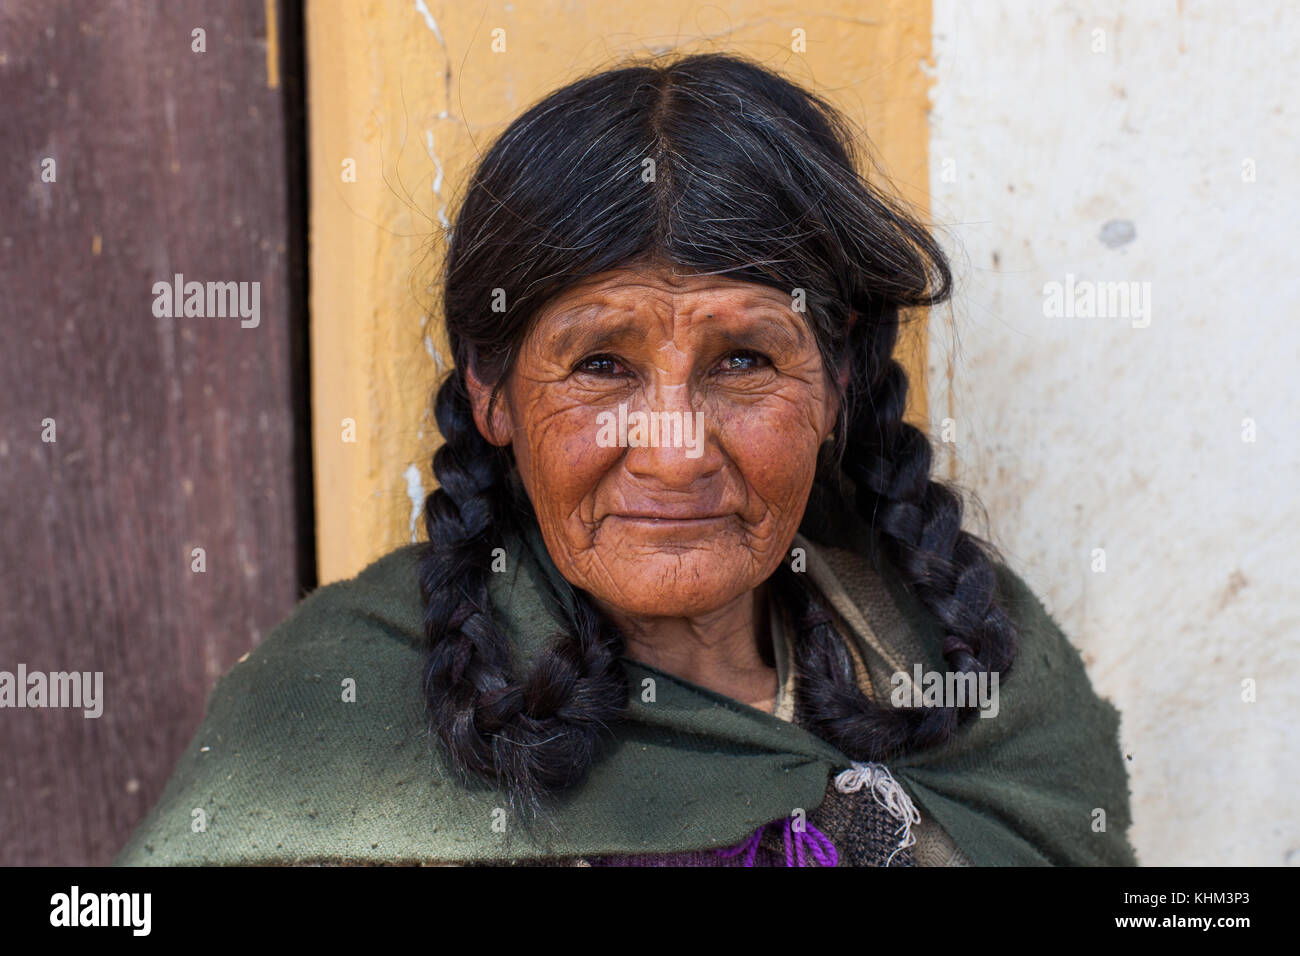 TARATA, COCHABAMBA, BOLIVIA S.A. - OCTOBER 2017: An elderly woman walks along the cobblestone roads of colonial Tarata, Bolivia in October 2017. Stock Photo